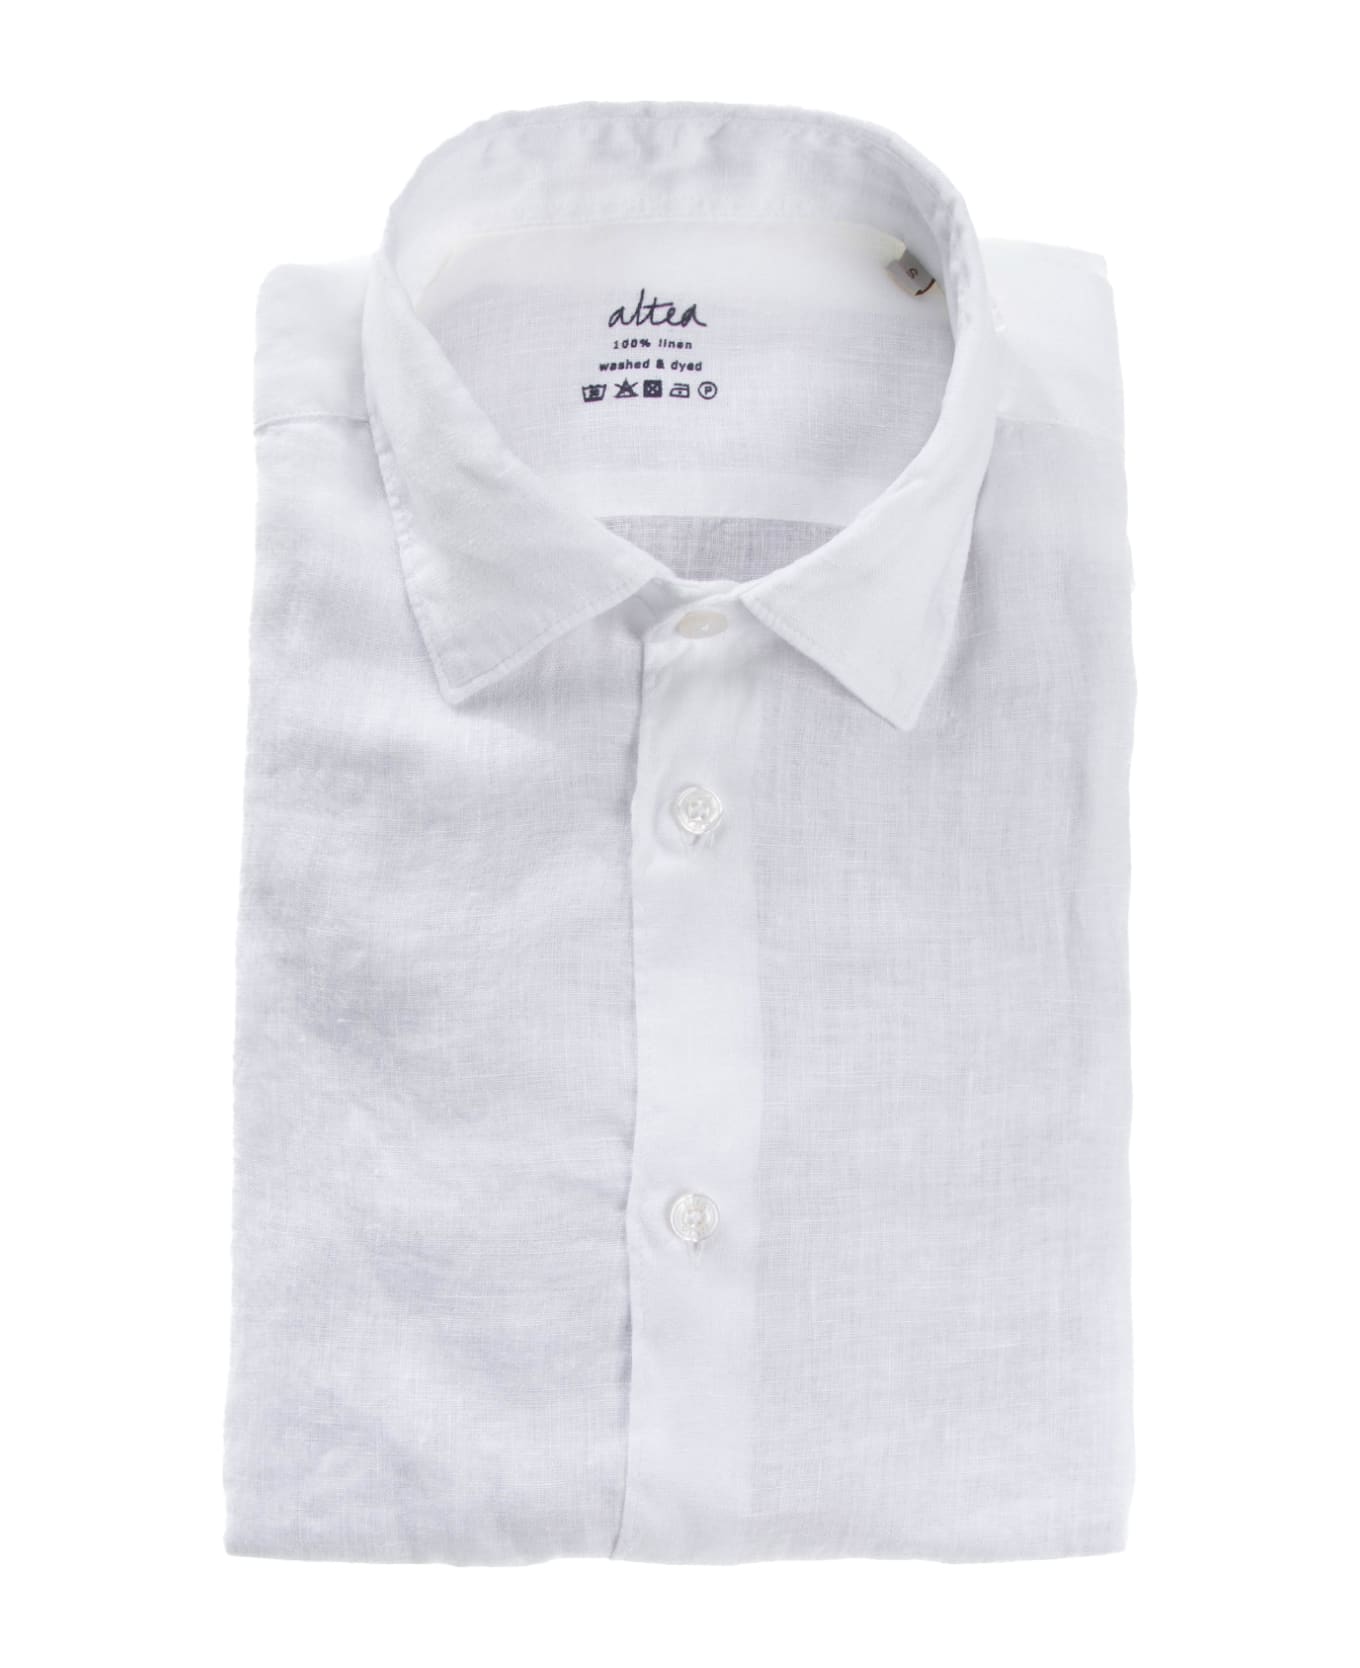 Altea Slim Fit Linen Shirt - BIANCO OTTICO シャツ